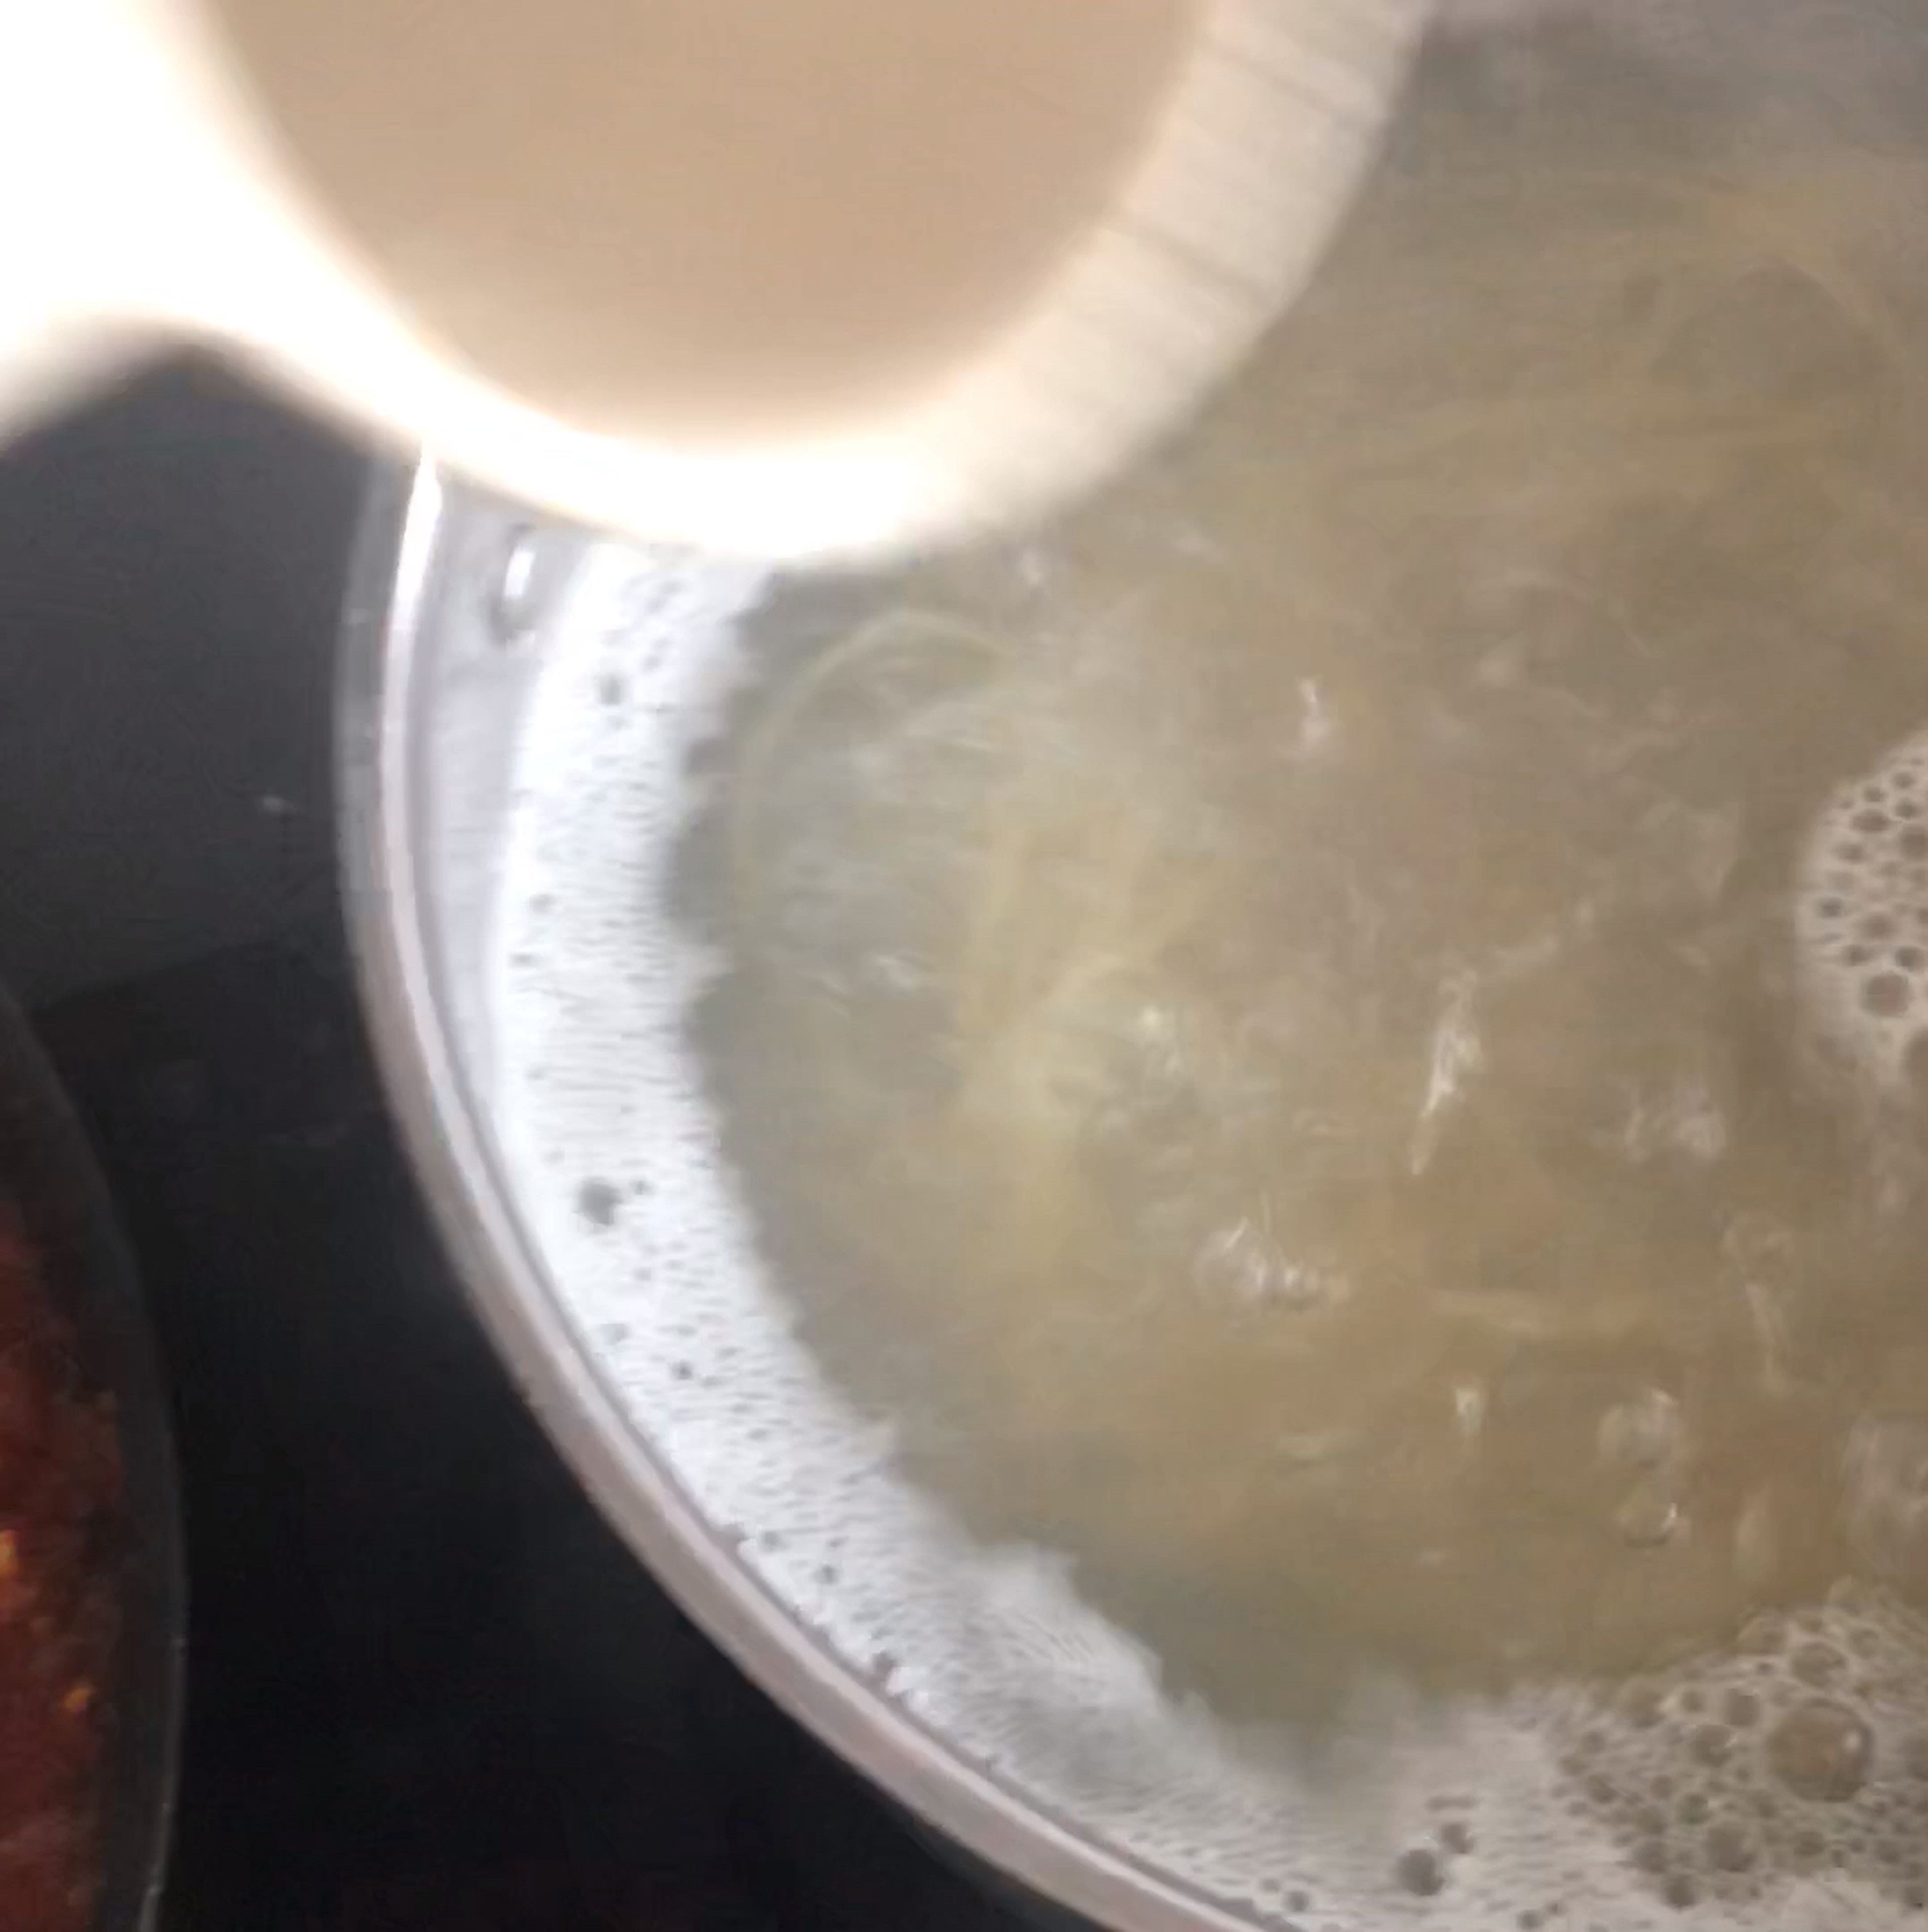 Die Soße leicht köcheln lassen, während die Linguine nach Packungsanleitung zubereitet werden, aber 1 Min. vor der angegebenen Kochzeit abgießen, damit sie wirklich al dente sind. Vor dem Abgießen etwas Kochwasser abschöpfen und für die Soße beiseitestellen.